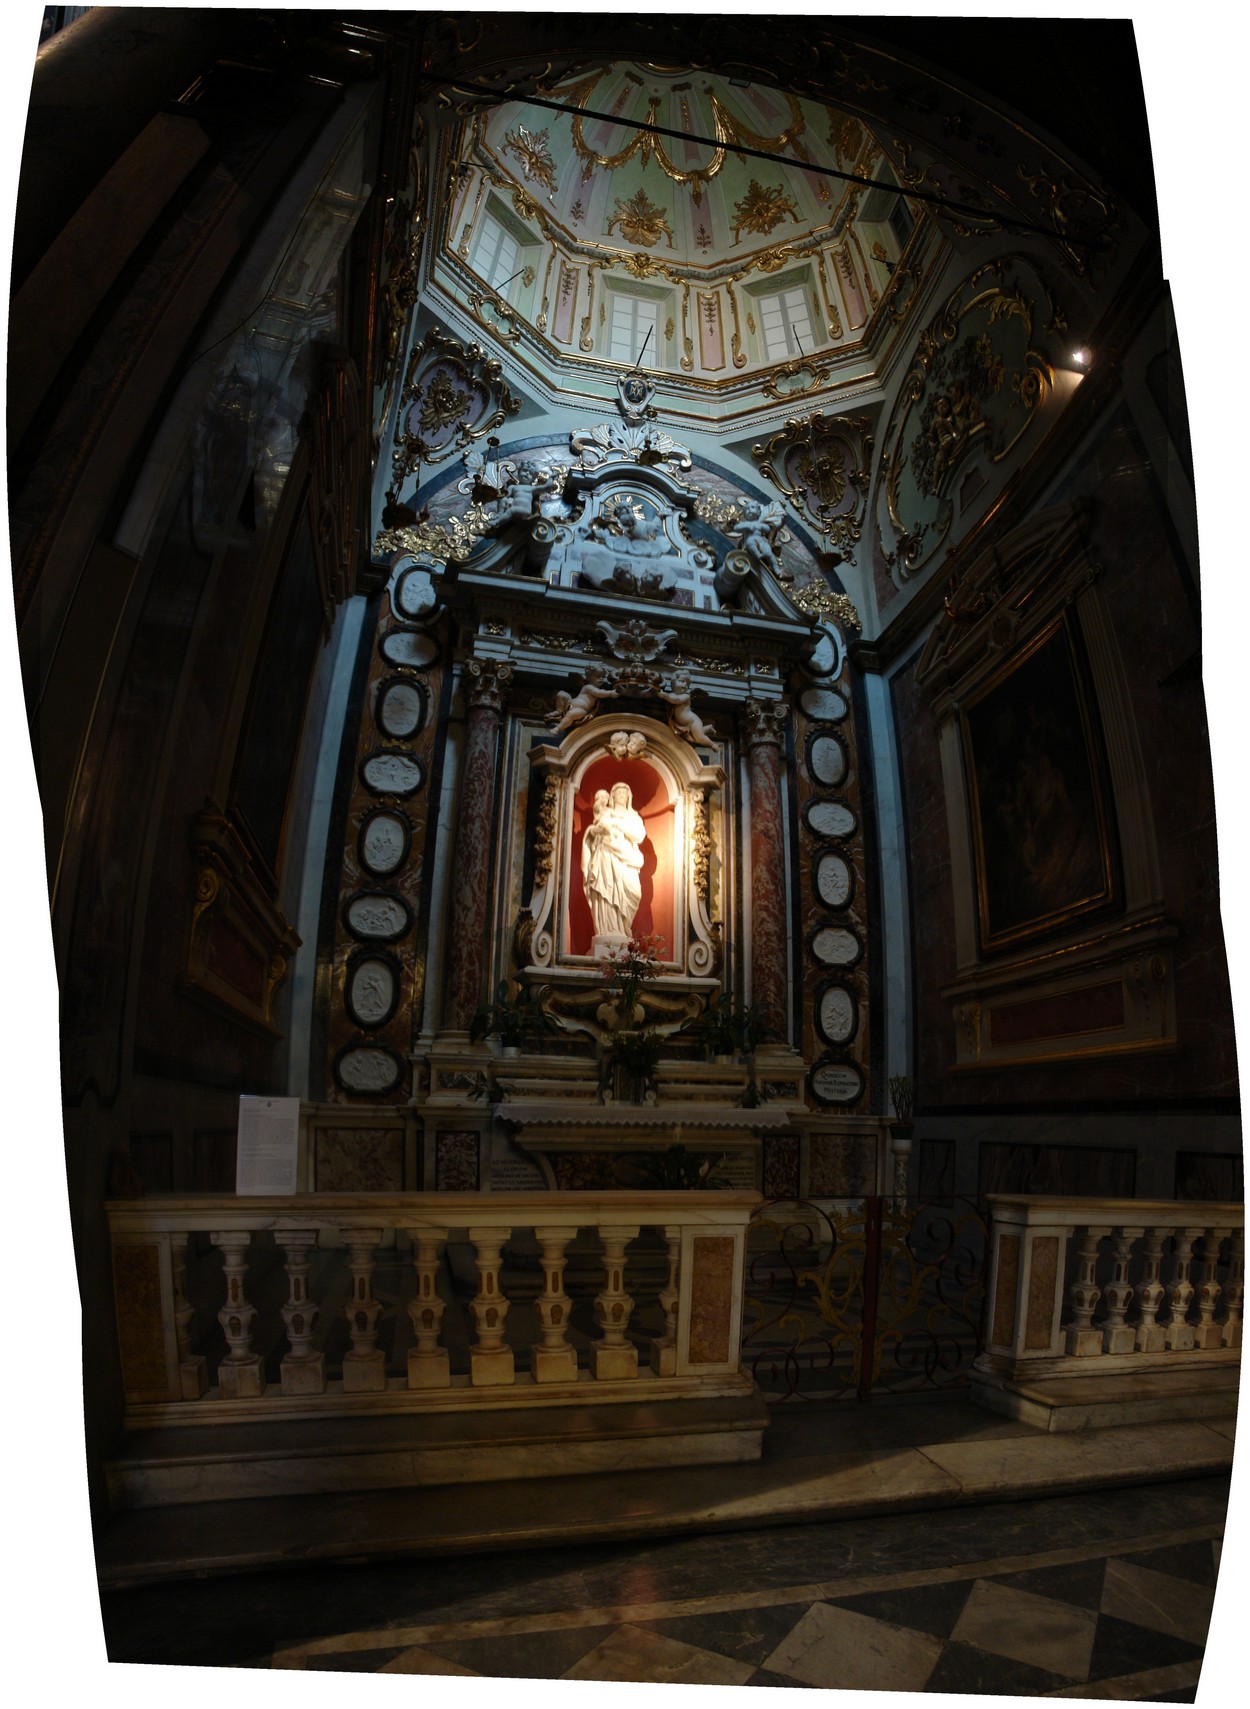 Savona - Chiesa di San Giovanni